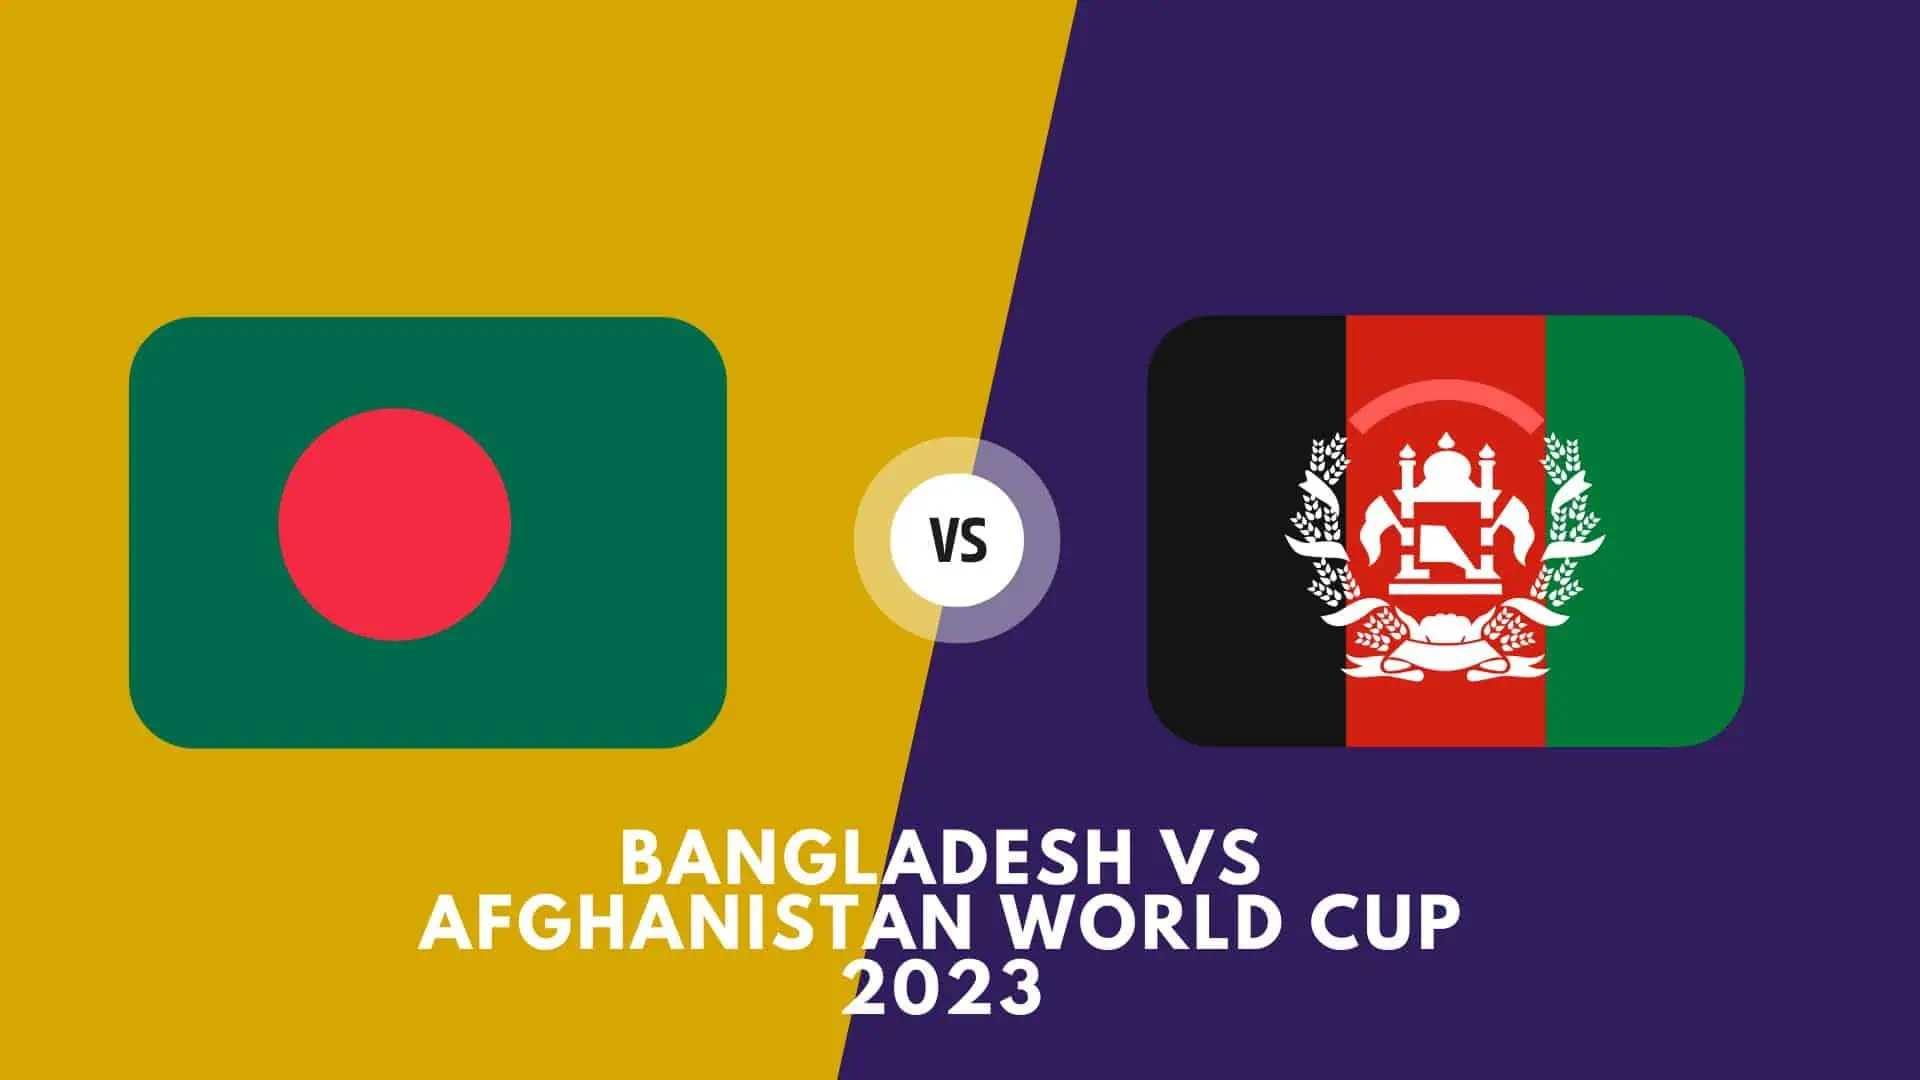 Bangladesh vs Afghanistan World Cup 2023